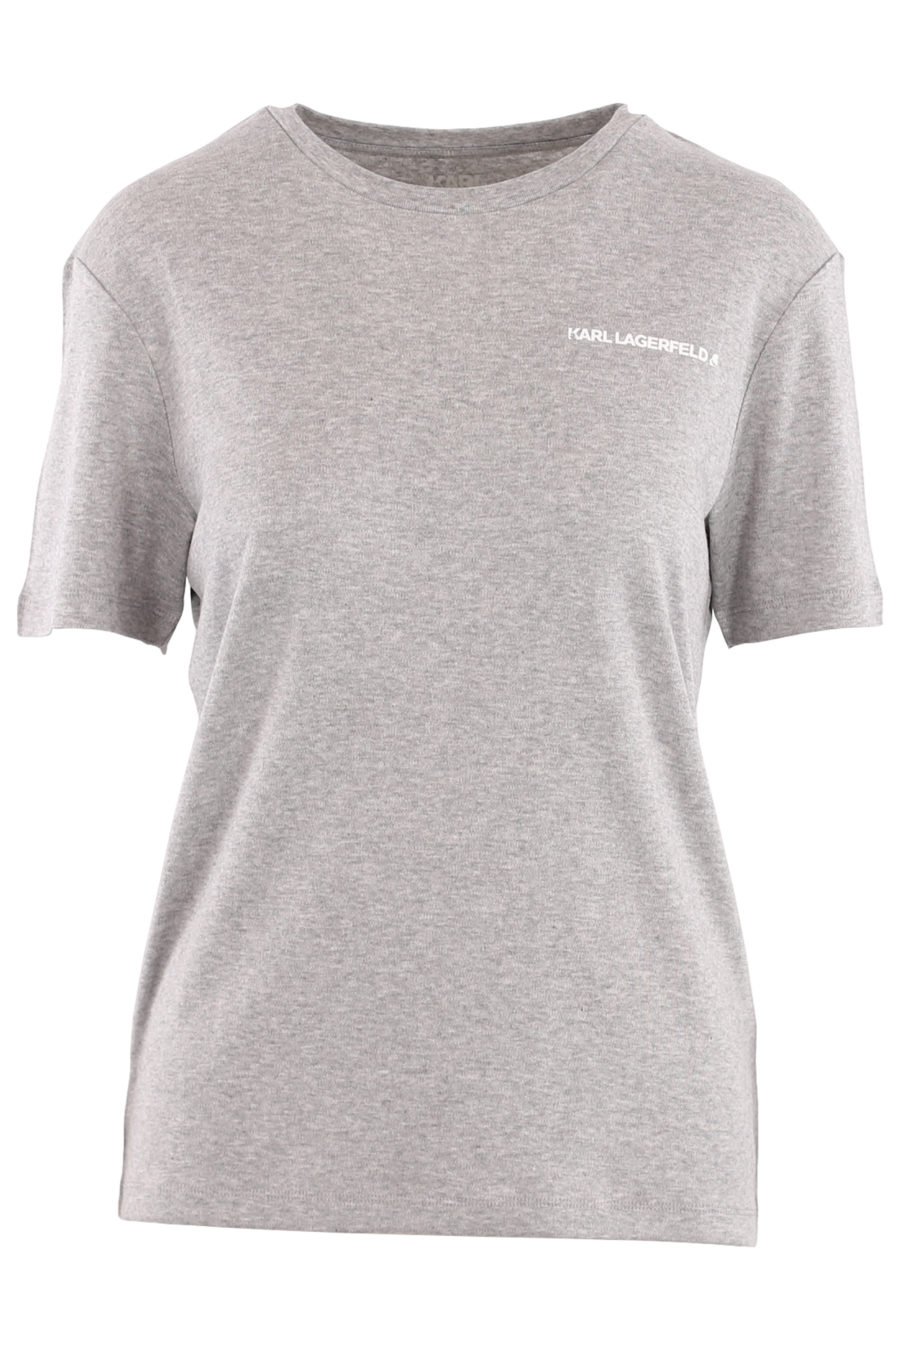 Camiseta unisex de color gris con logotipo - 5c4051c6c0d43ed702bd57f2214bcd74aeaeb06f